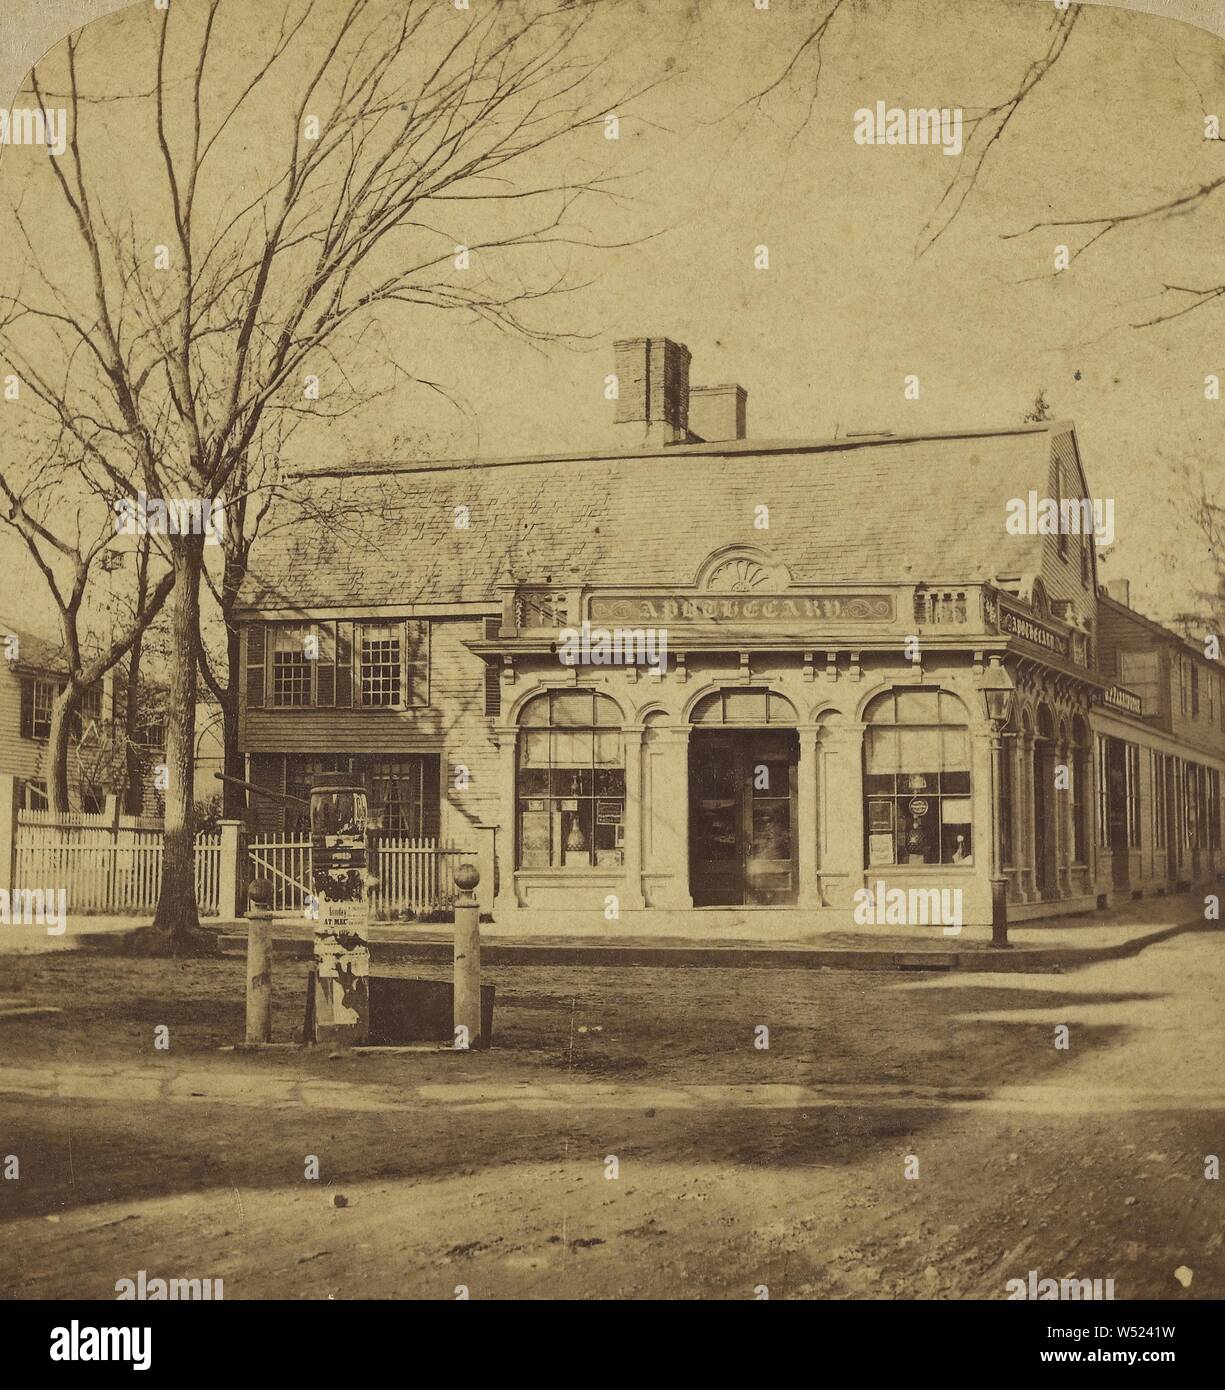 Vieille sorcière House, Salem, Mass., Deloss Barnum (américain, 1825 - 1873), vers 1865, à l'albumine argentique Banque D'Images